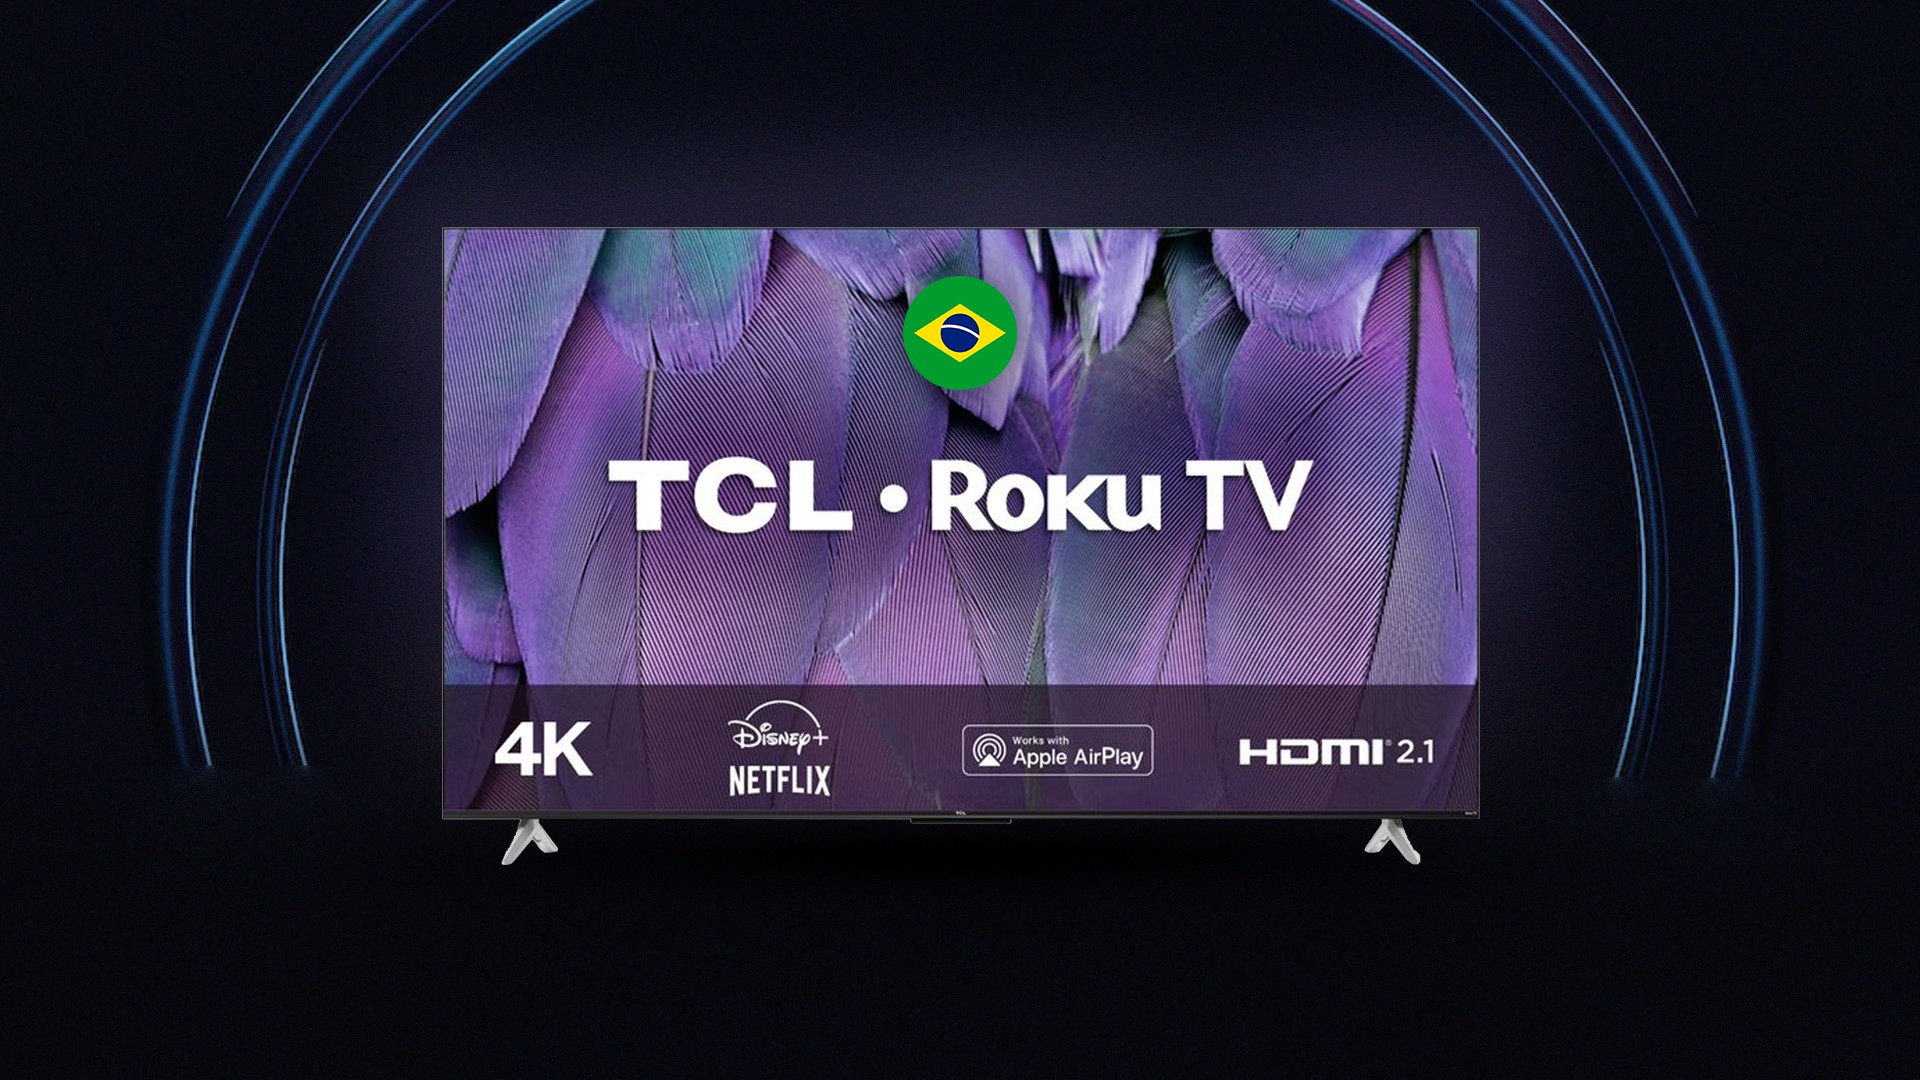 Nova SEMP Roku TV chega ao Brasil